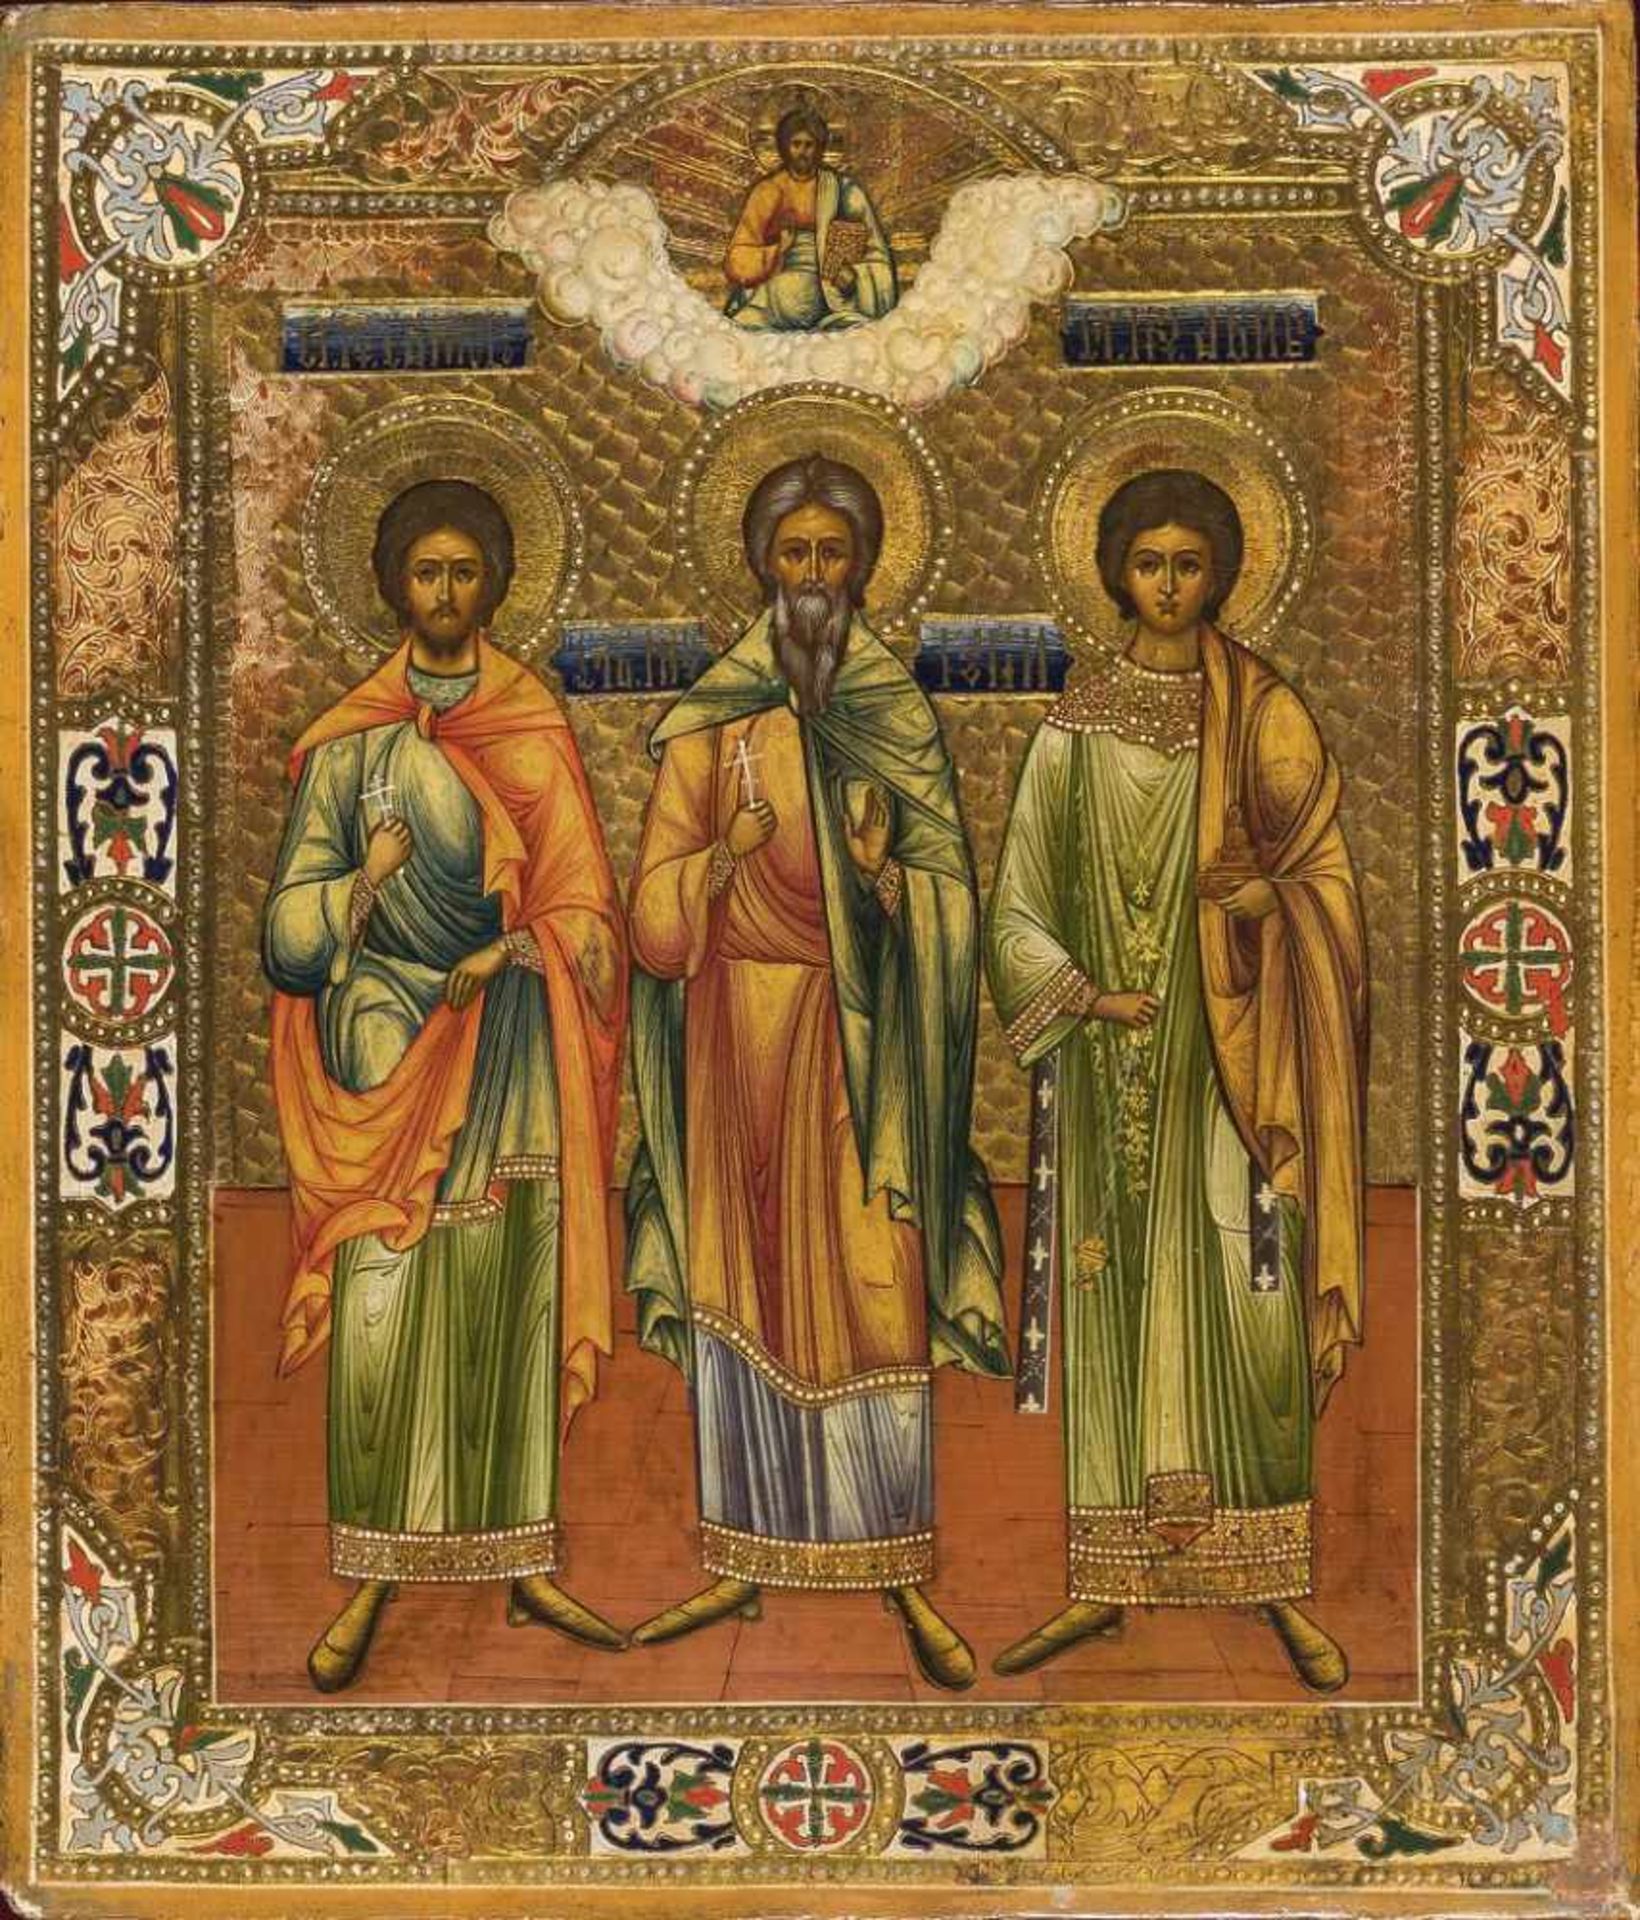 Ikone: Samon, Gurij und Aviv, die drei heiligen Heiratsvermittler und Beschützer der Ehe.